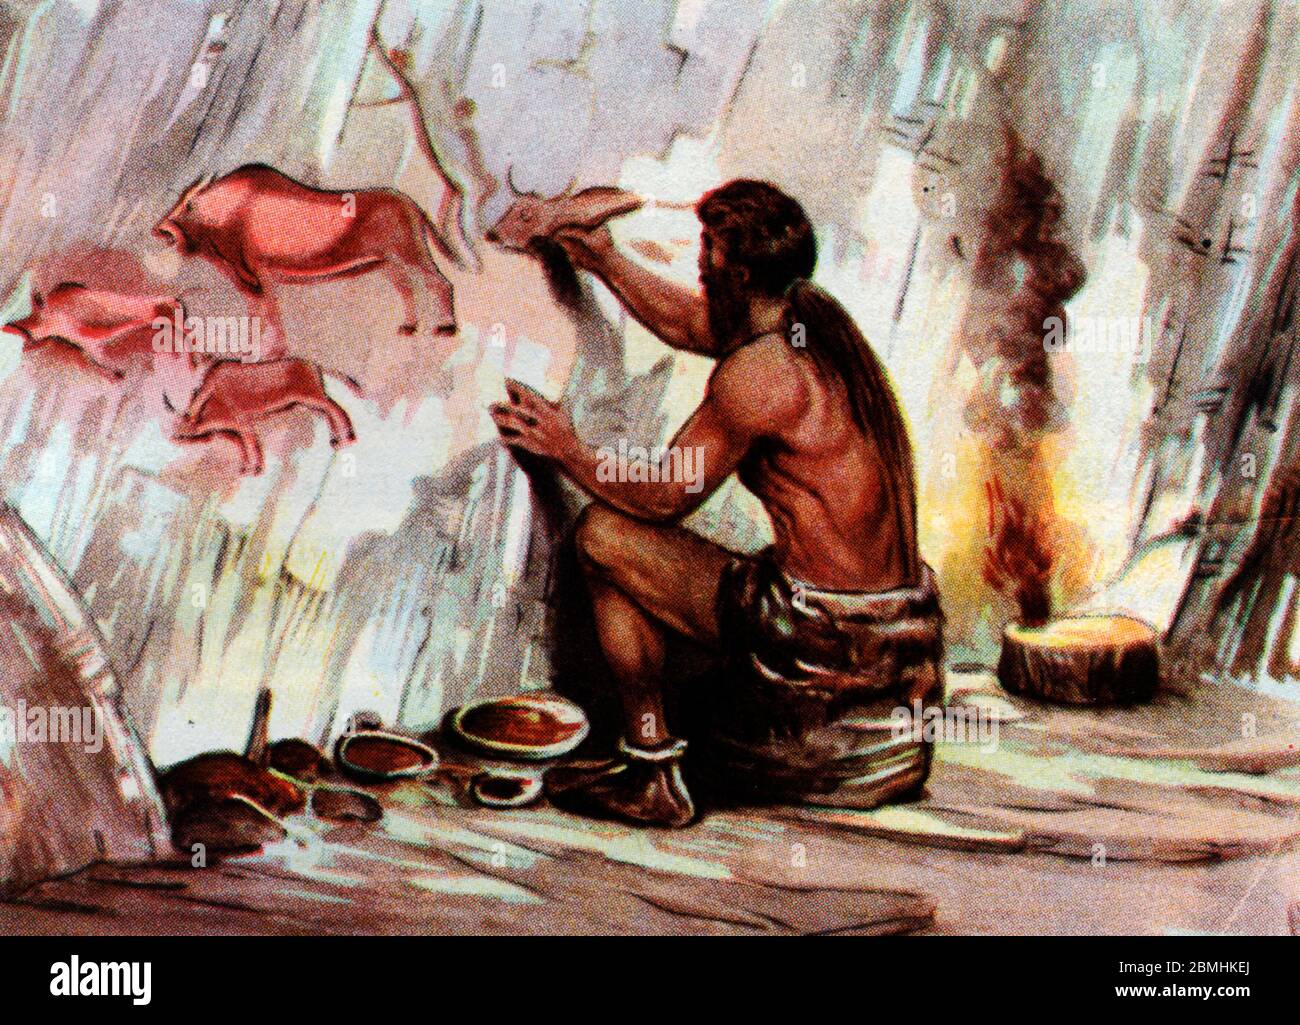 Prehistoire, paleolithique : un homo sapiens dessine des animaux sur la paroi d'une grotte (peinture rupestre) - Illustration anonyme tiree de 'vita Foto Stock